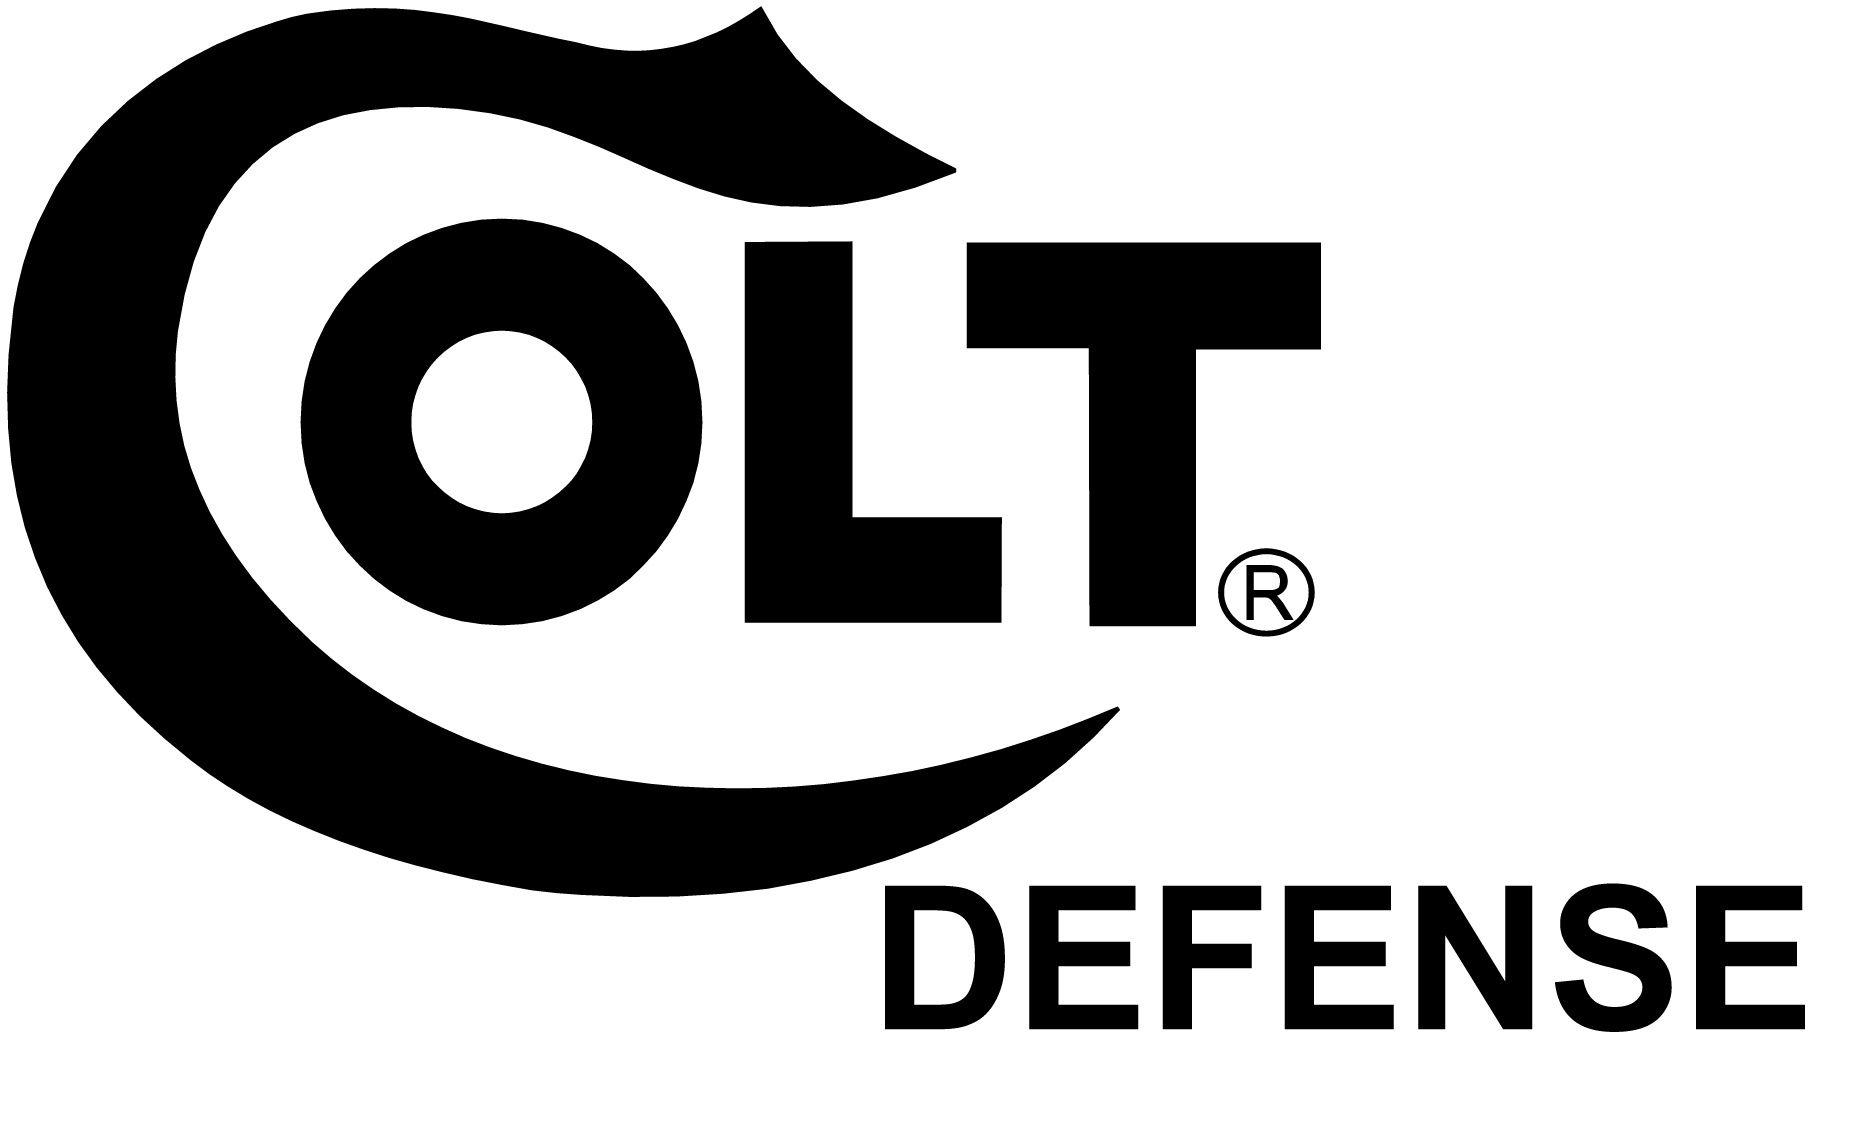 Colt Gun Logo - Colt firearms Logos